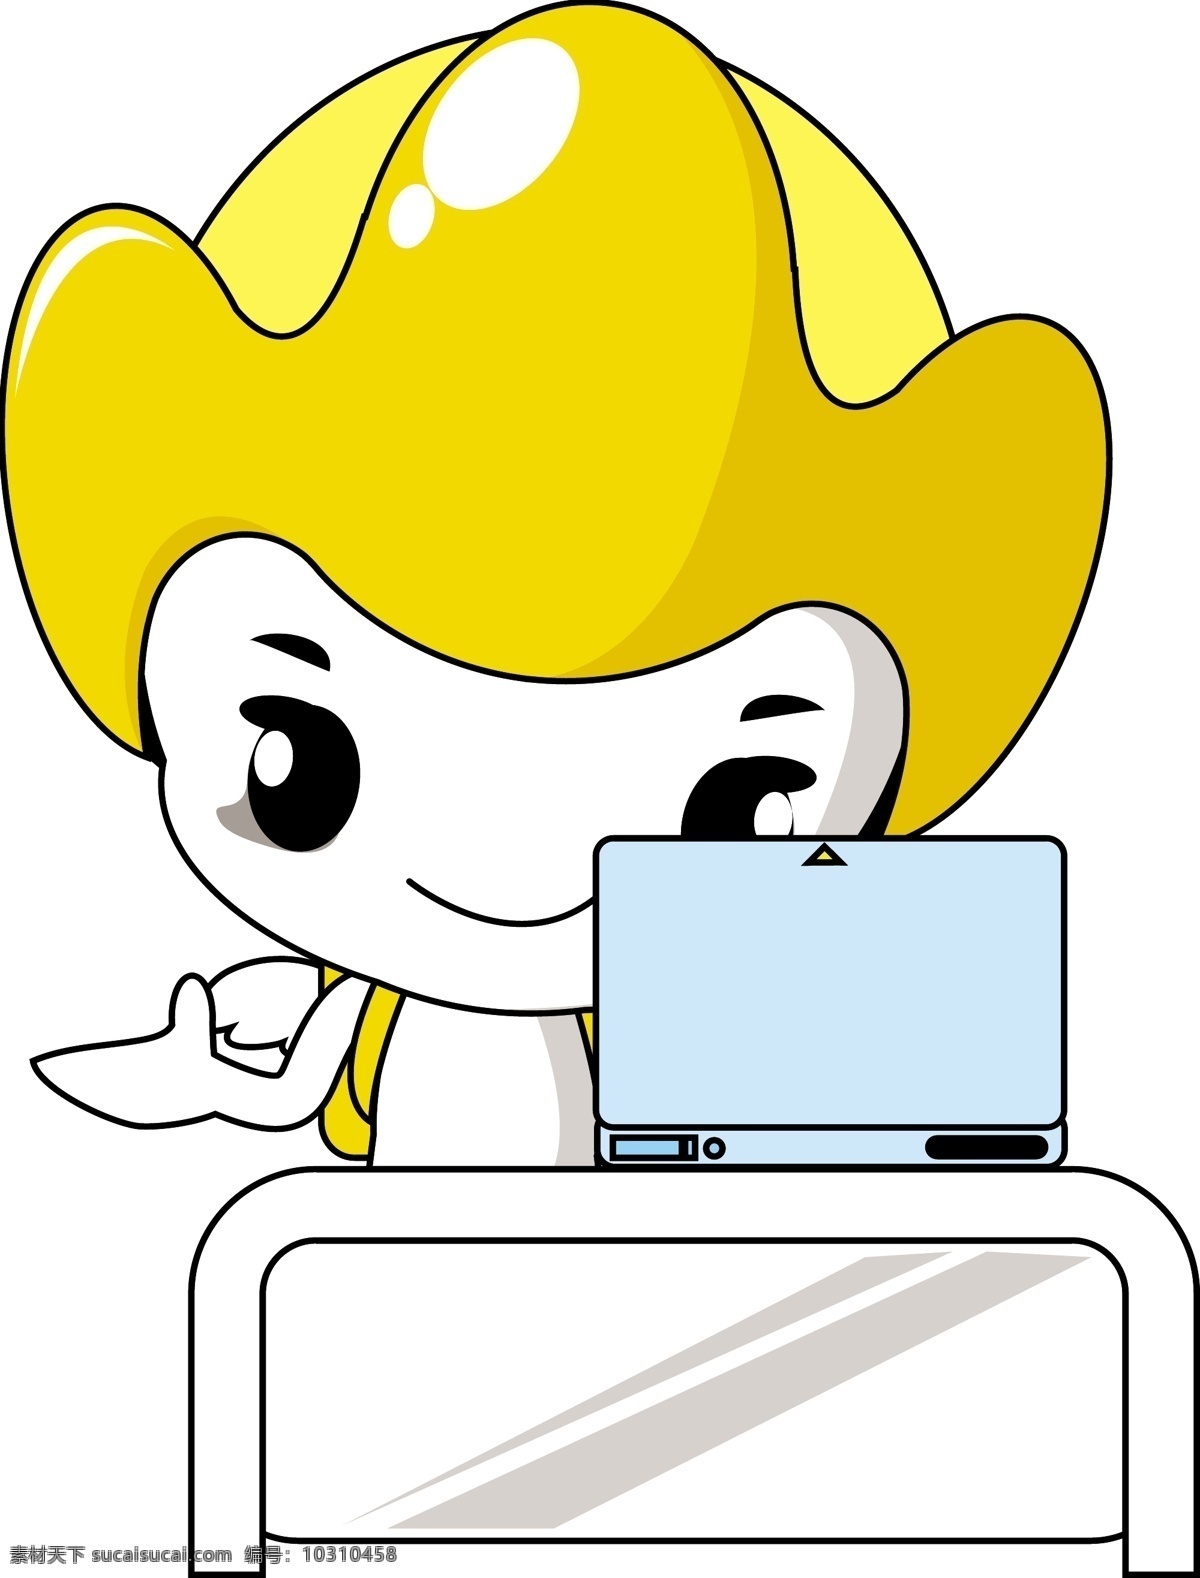 人物 卡通 简 笔画 标志 插画 电脑 动漫动画 动漫人物 简笔画 简笔画人物 可爱 漫画 帽子 商标 人物商标 黄色小人 桌子 动漫